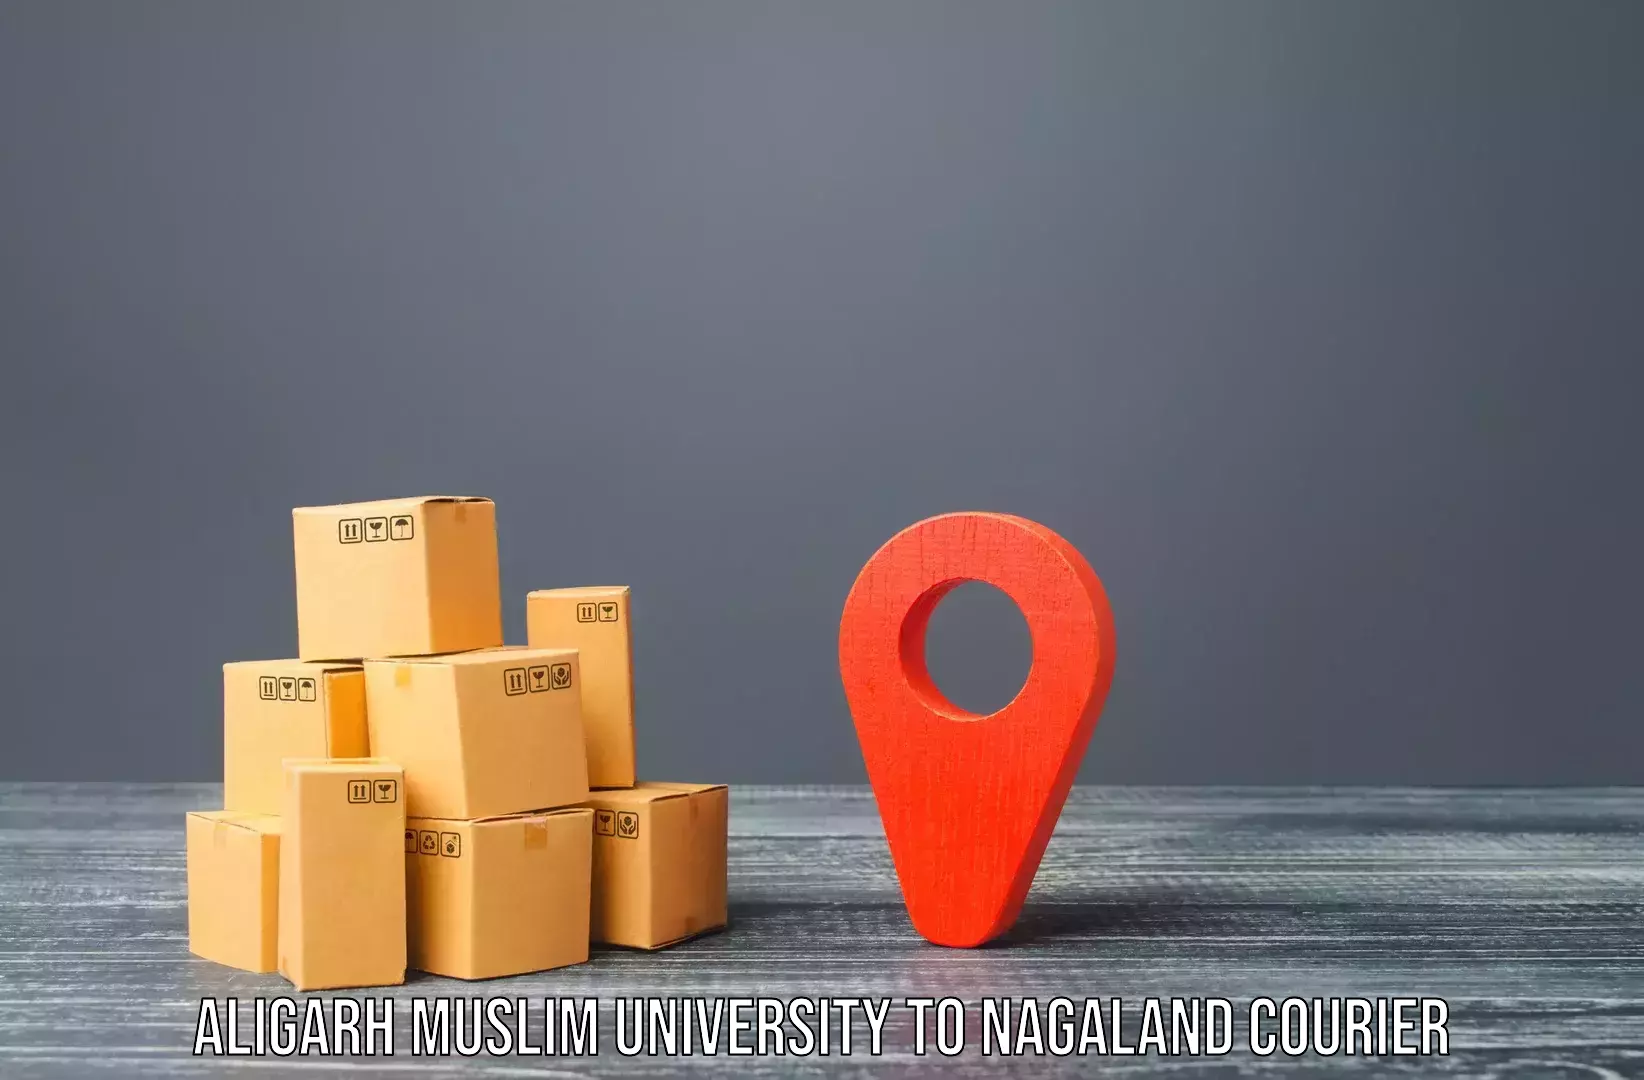 Personalized relocation plans Aligarh Muslim University to Wokha